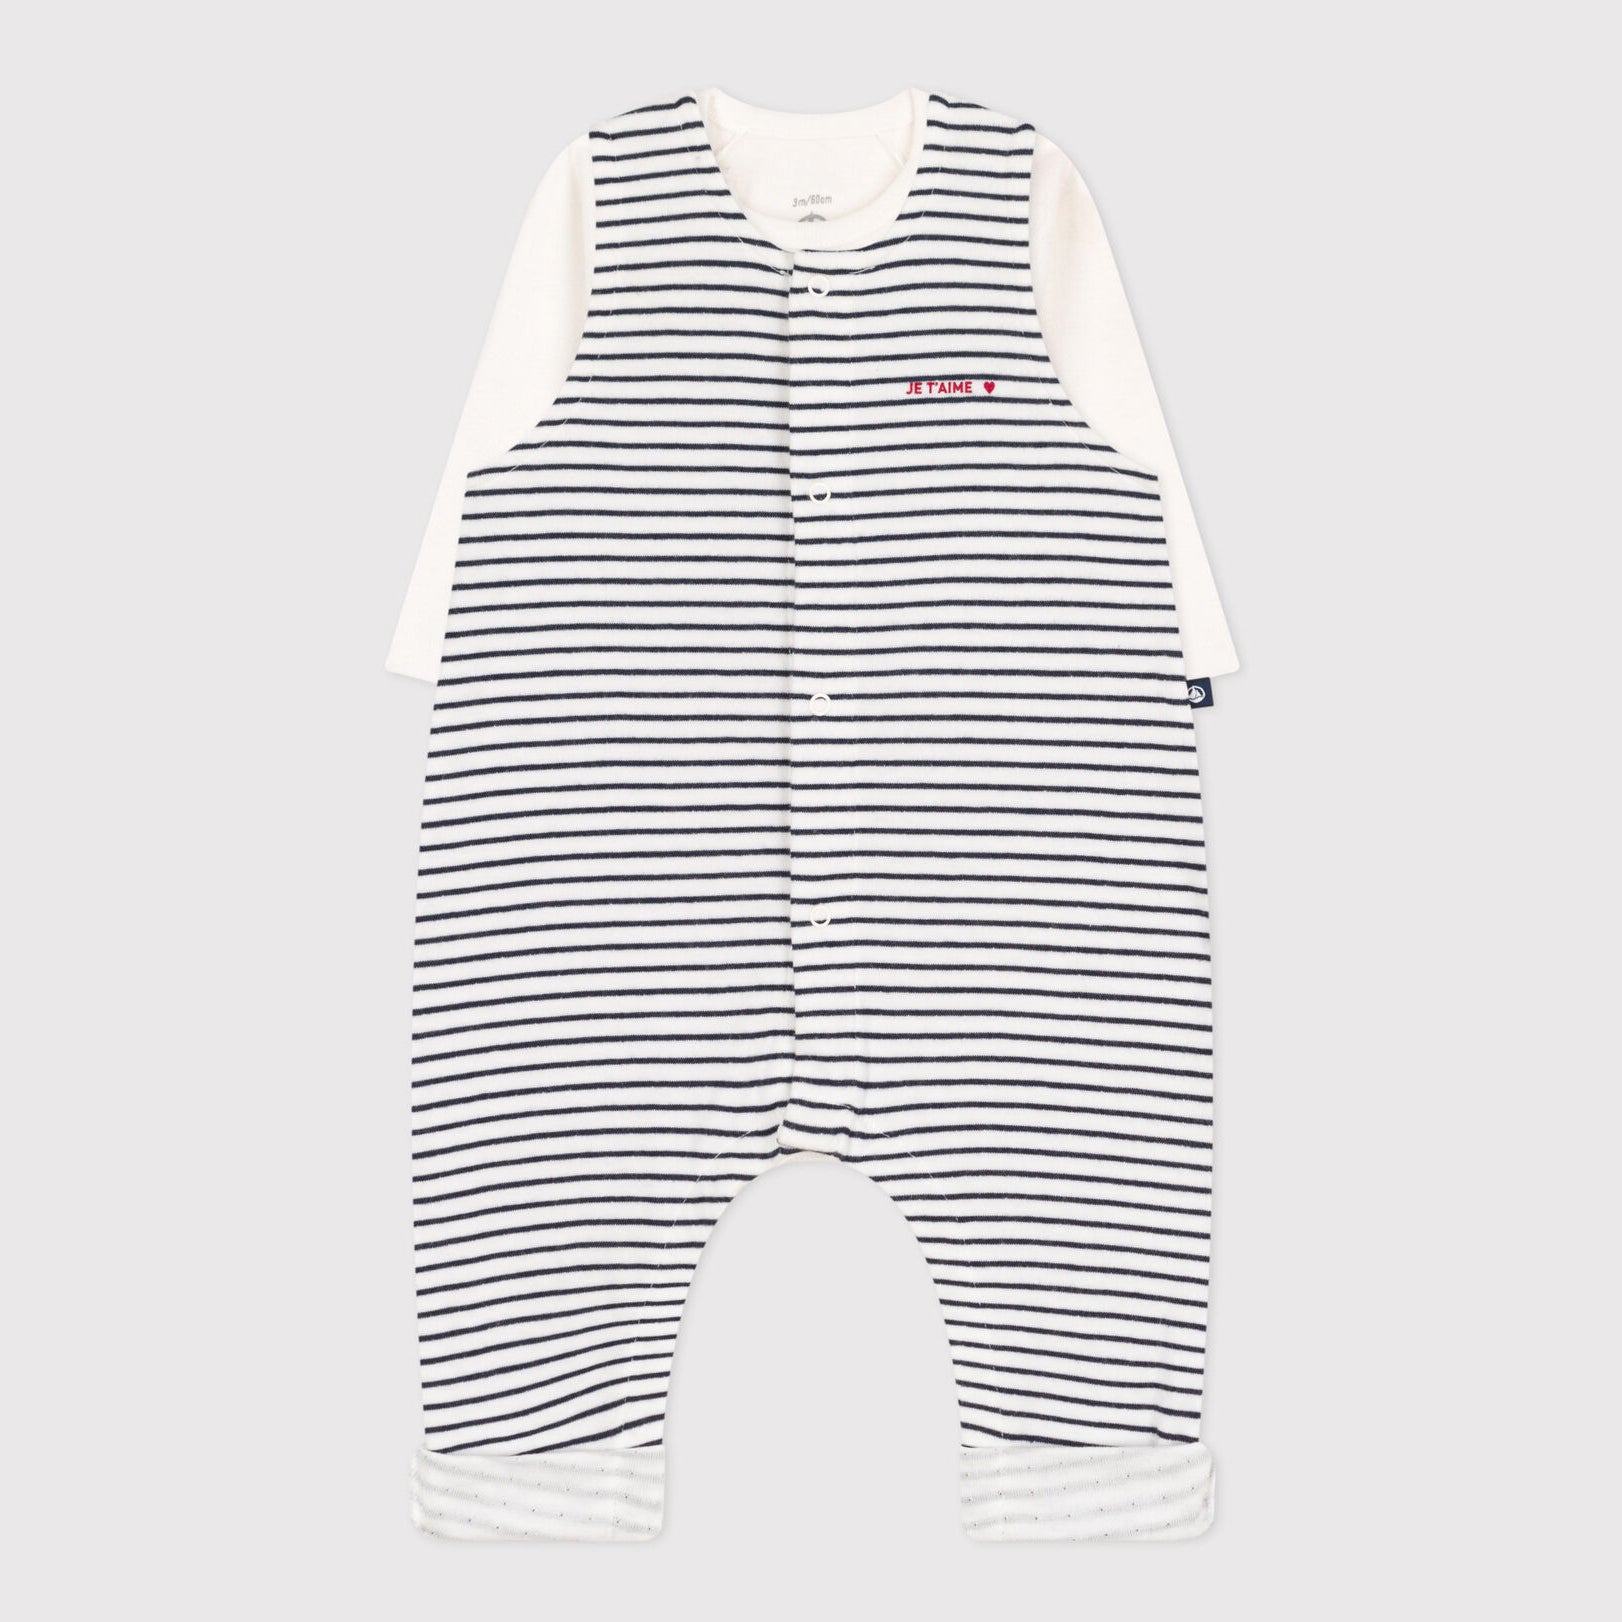 Baby Boys & Girls Navy Stripes Cotton Set